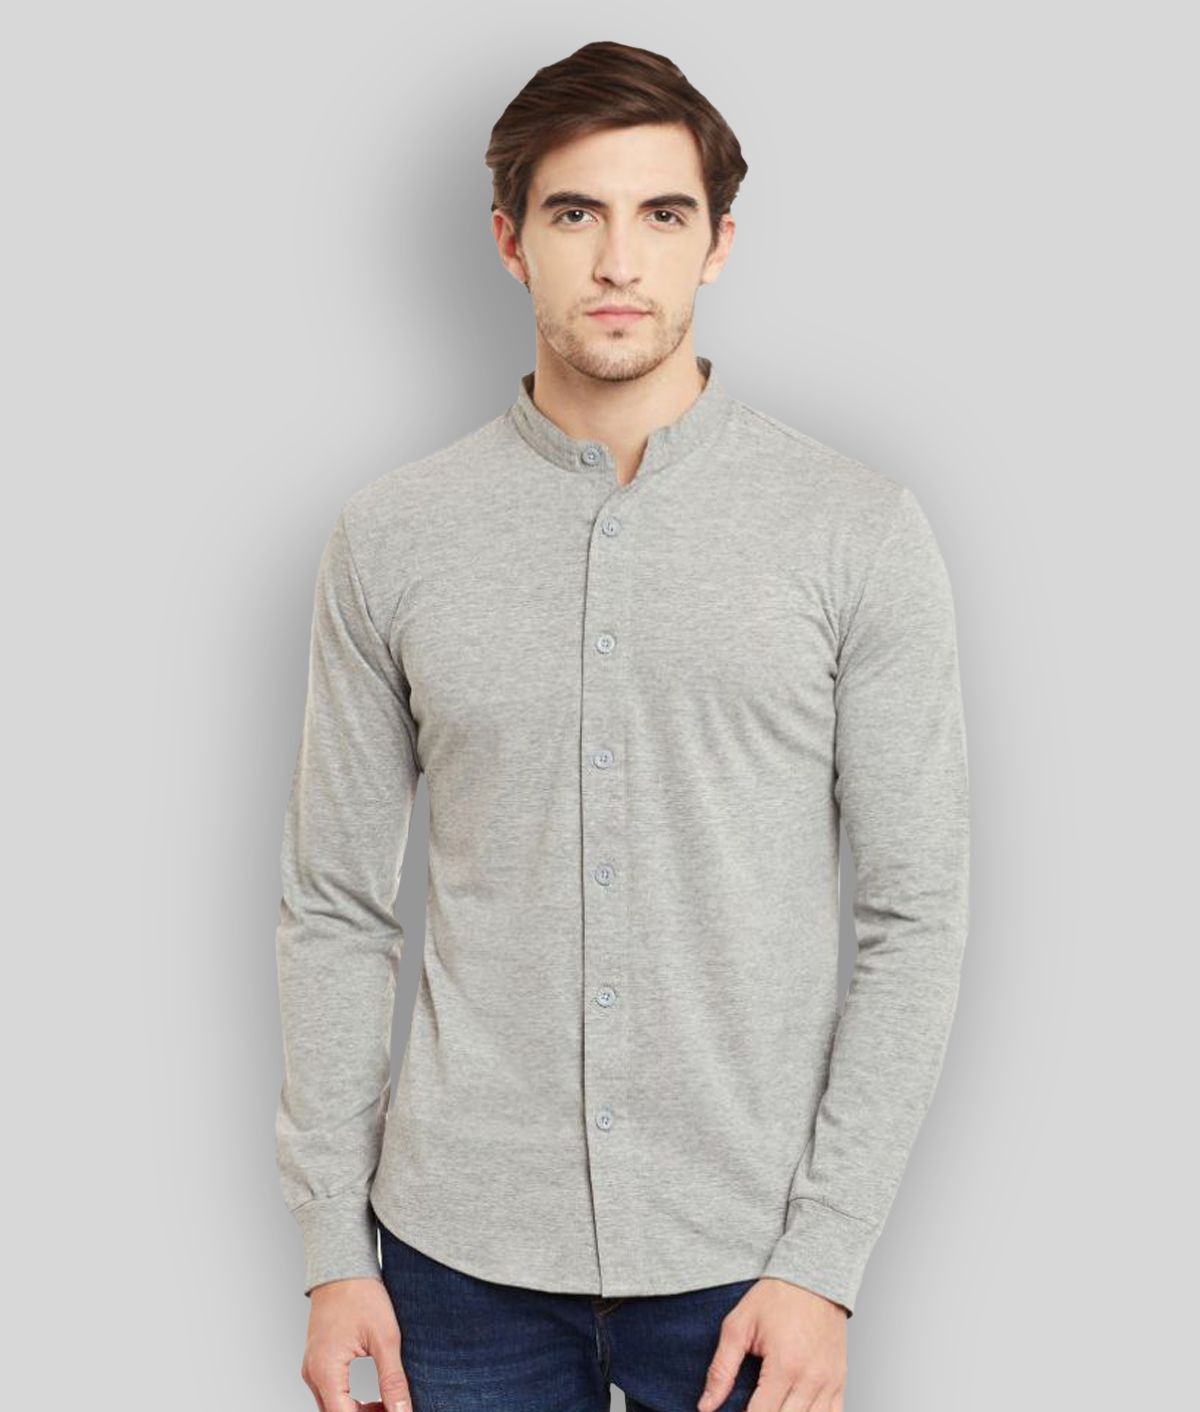 Gritstones - Grey Melange Cotton Regular Fit Men's Casual Shirt (Pack of 1 )